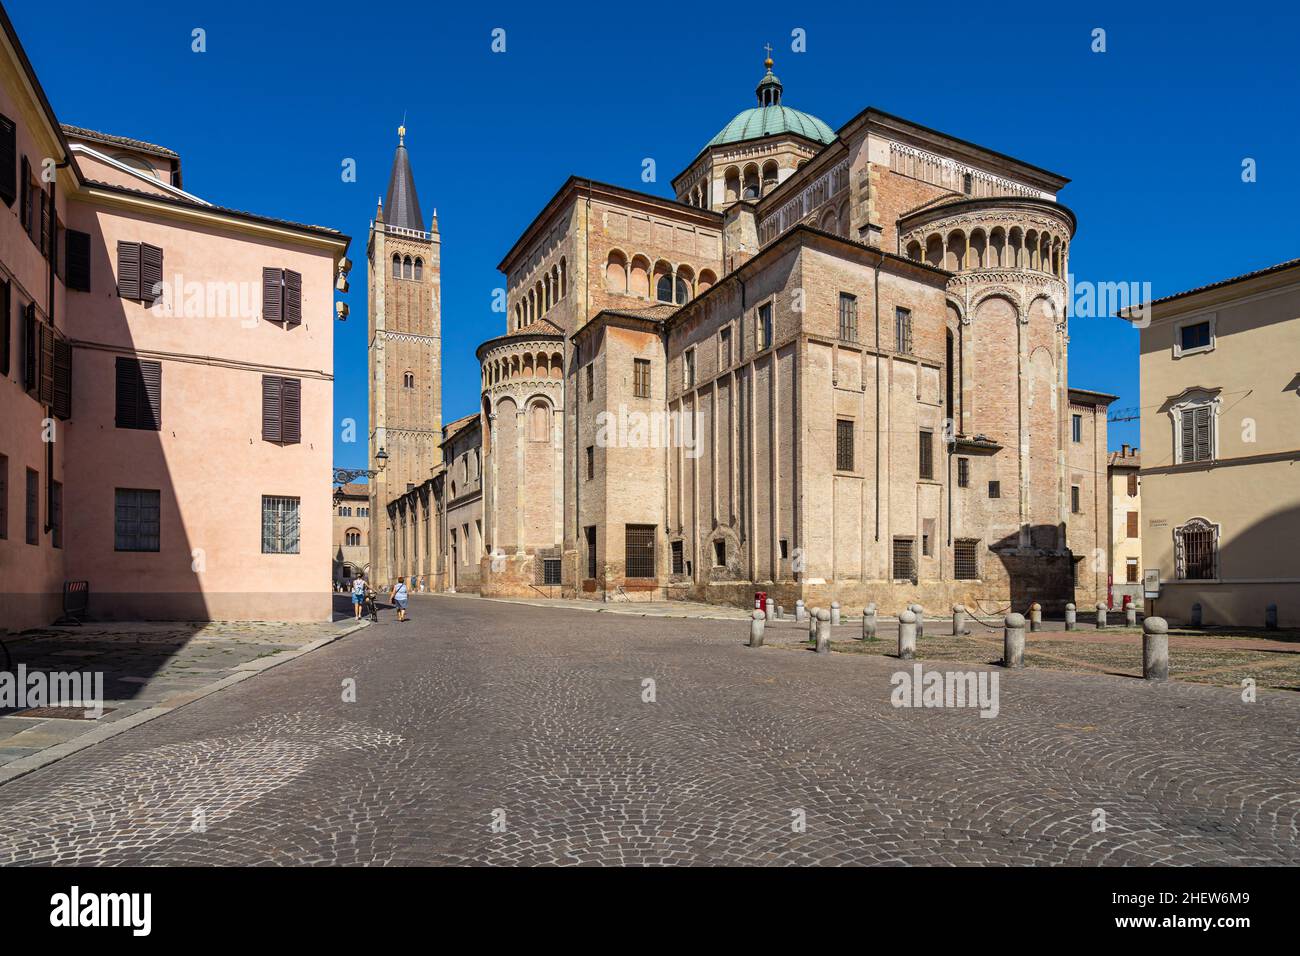 Vista posteriore del Duomo di Parma, il punto di riferimento più iconico del centro storico di Parma, l'Emilia Romagna, Italia Foto Stock